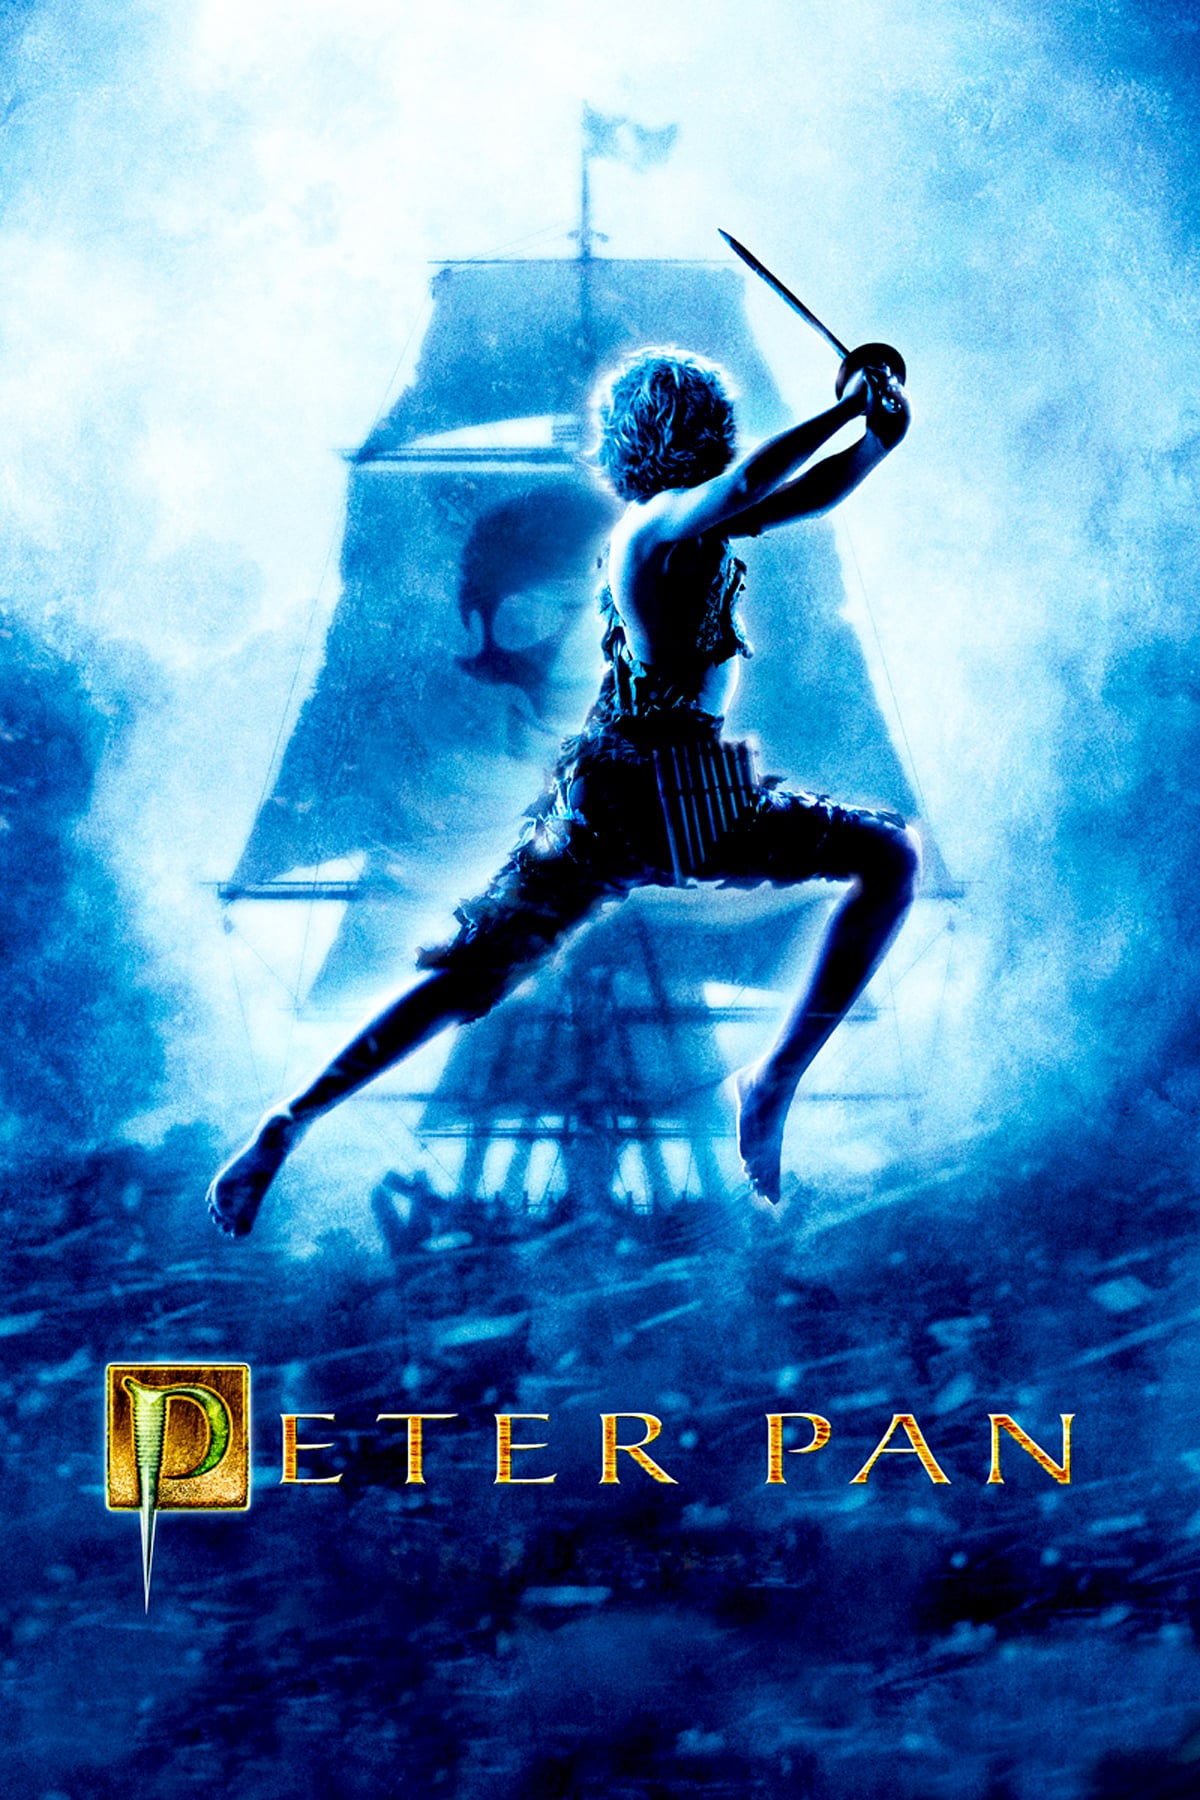 Peter Pan (2003) Poster - Peter Pan Photo (43105506) - Fanpop